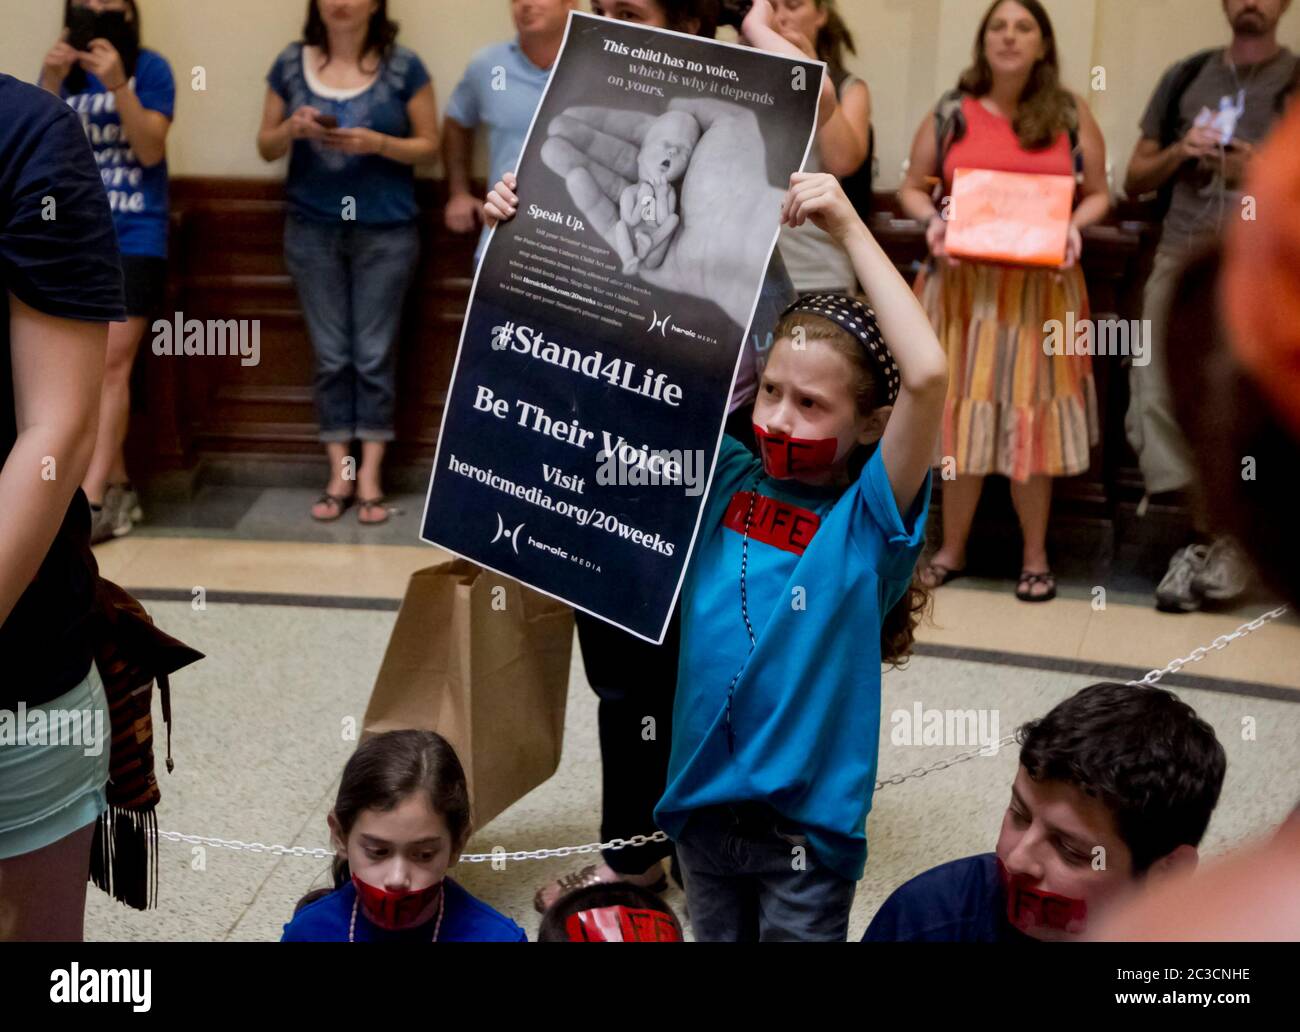 11. Juli 2013 Austin, Texas, USA: Menschenmassen für und gegen ein vorgeschlagenes neues Gesetz, das Abtreibungsbeschränkungen verschärfen würde, versammeln sich im Texas Capitol, während Senatoren über die umstrittenen Gesetze debattieren. Dieses junge Mädchen hat ein Poster, auf dem ein kleiner menschlicher Fötus zu sehen ist. ©Marjorie Kamys Cotera/Daemmrich Photography Stockfoto